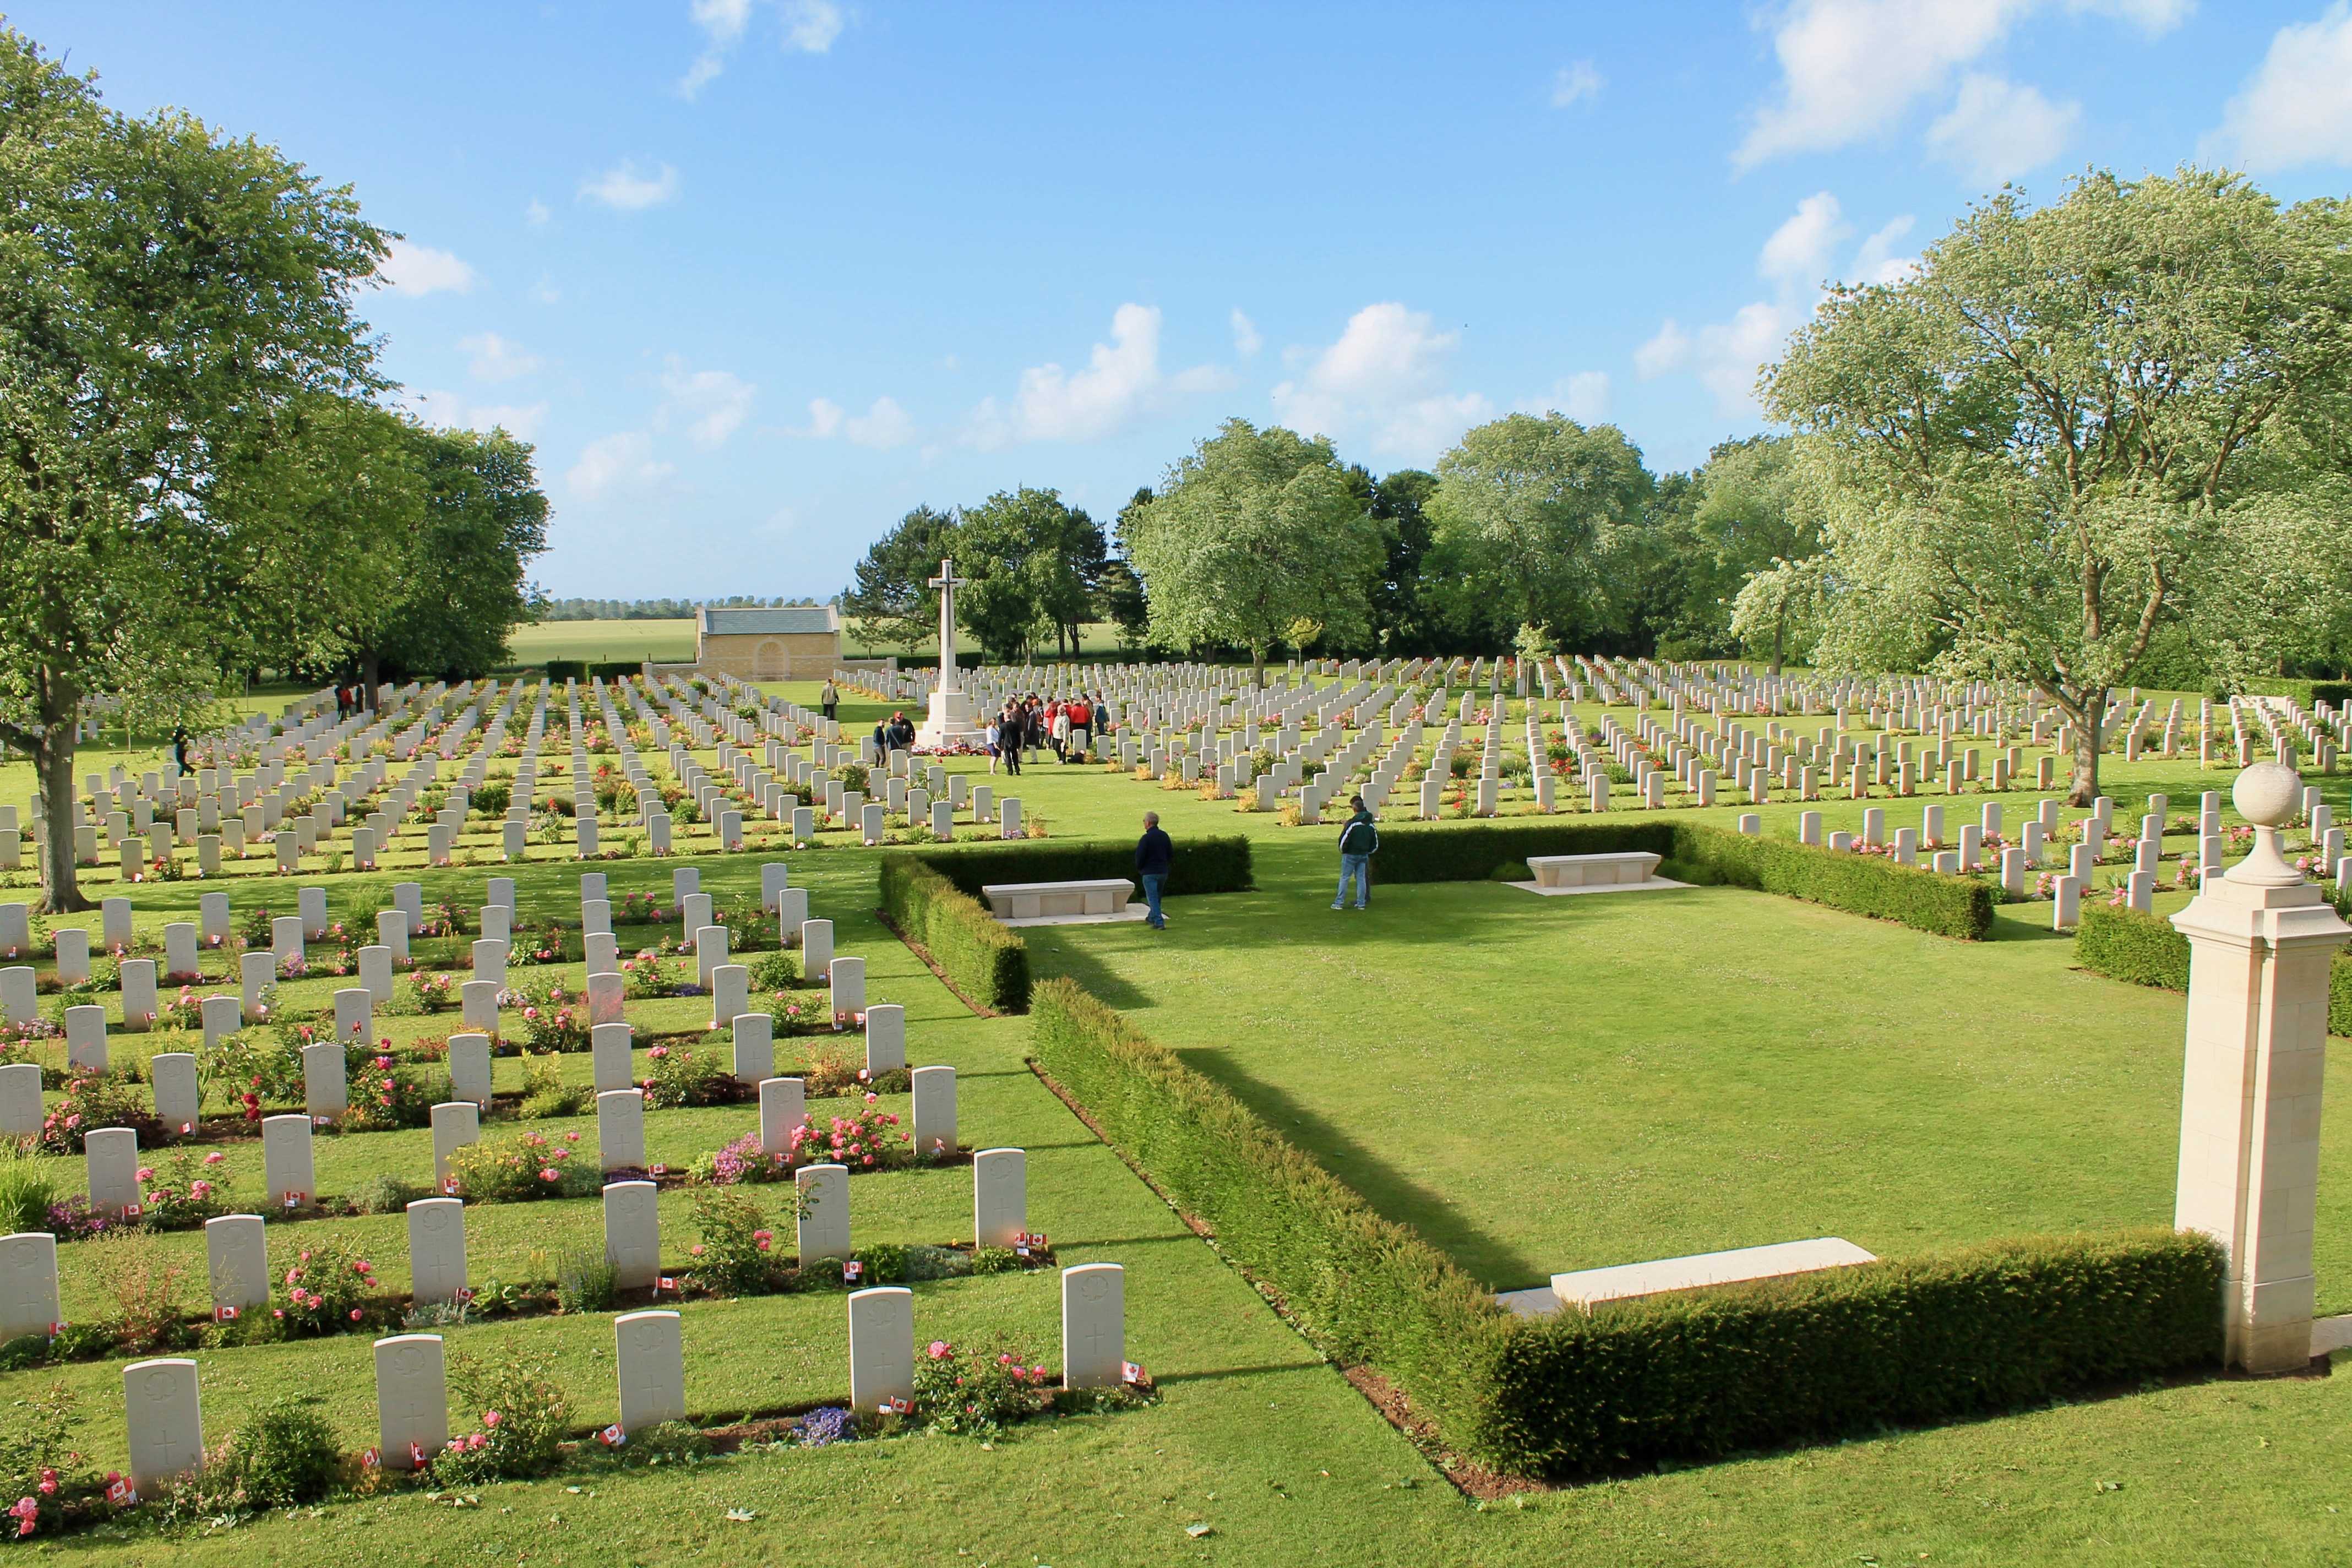 Photographie en couleur – Vue d’un cimetière militaire où se succèdent des rangées uniformes de pierres tombales blanches